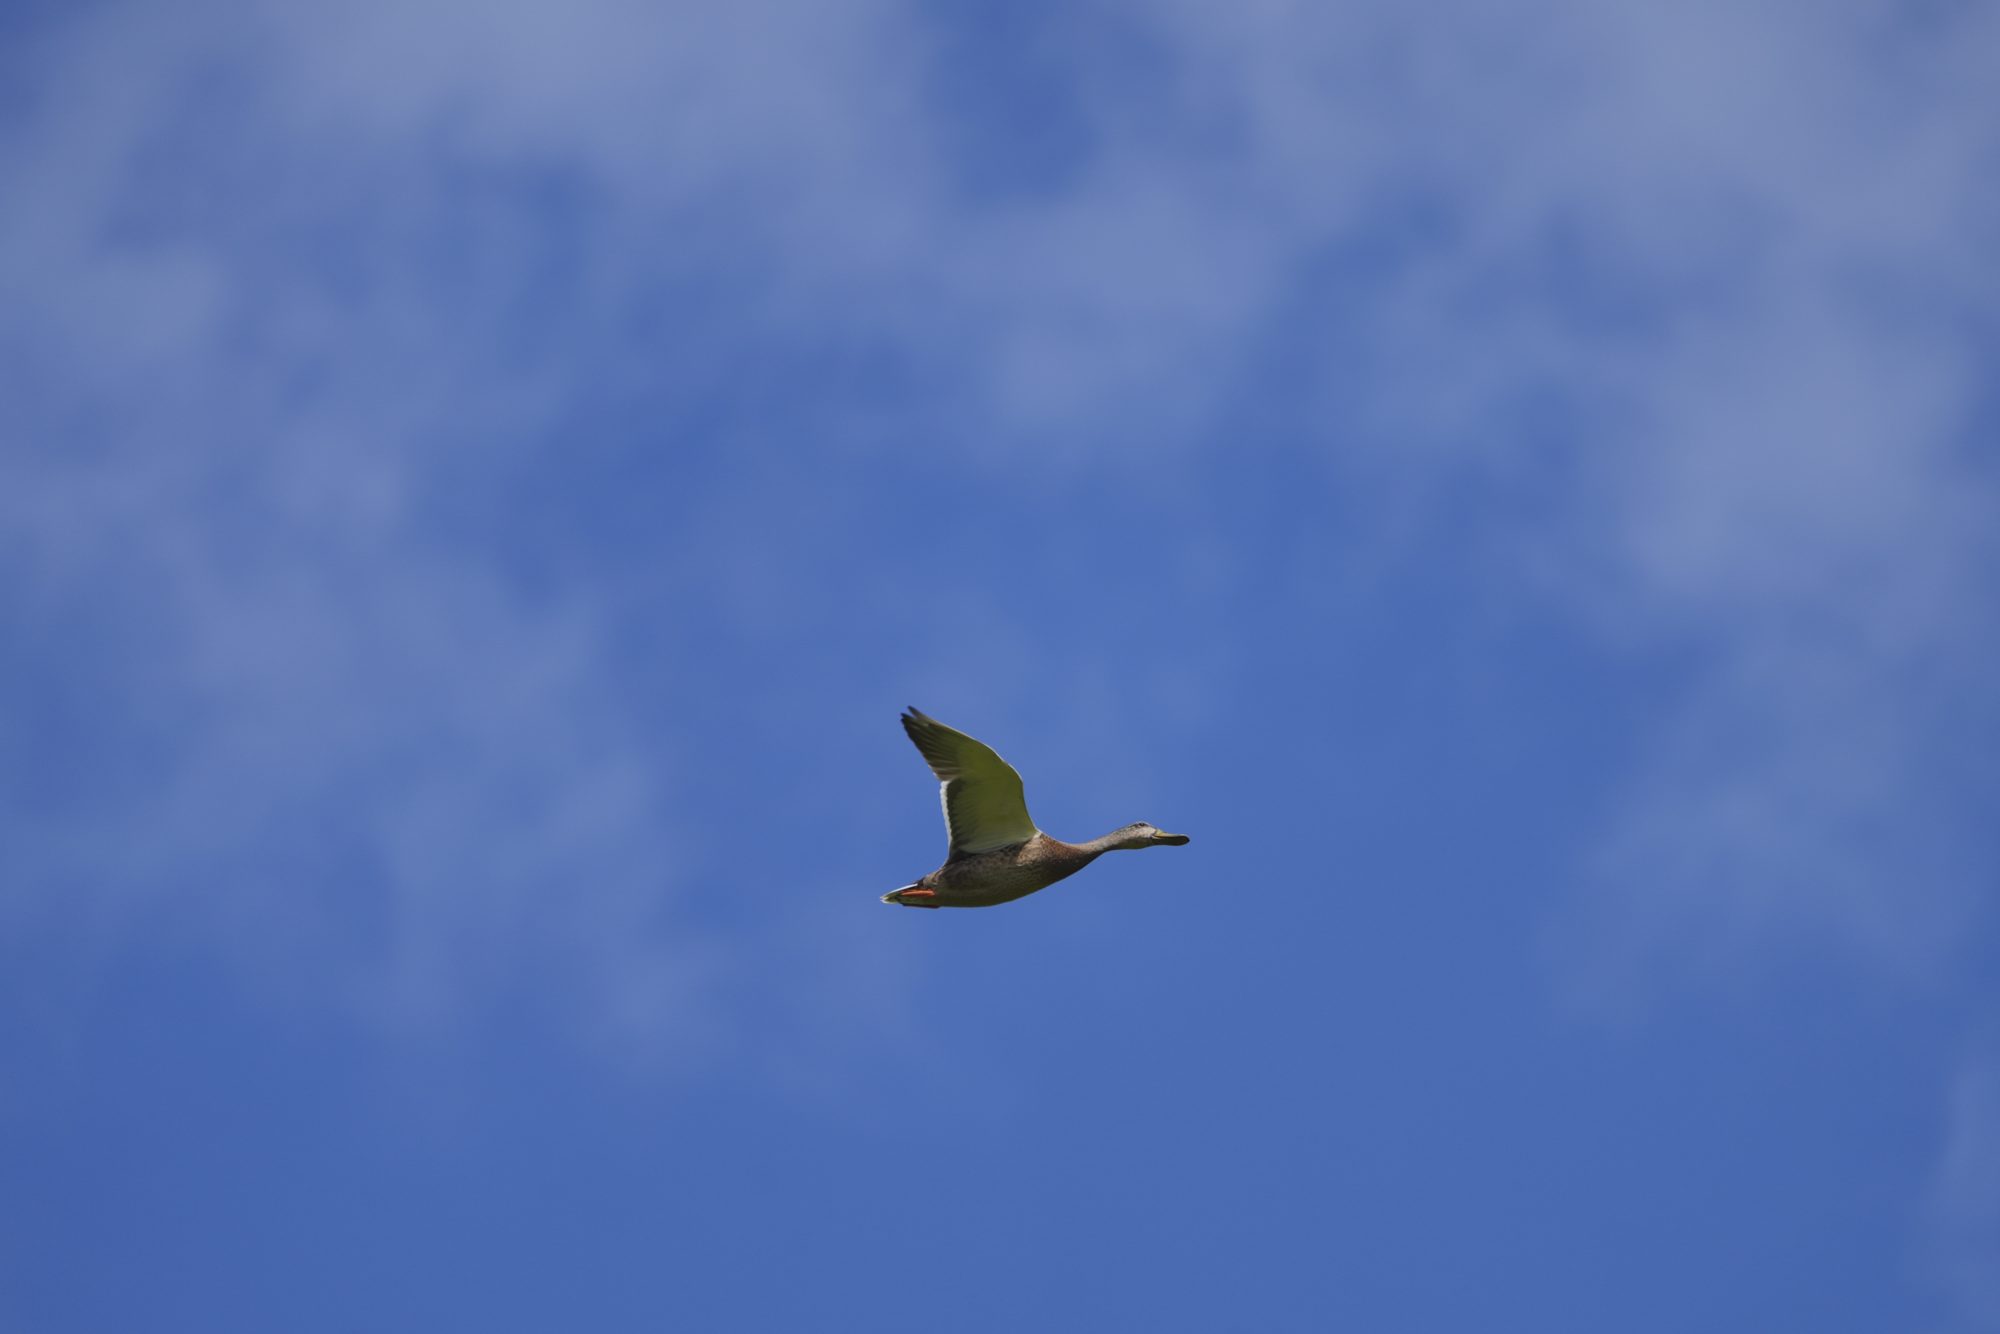 A female Mallard Duck in flight, against a mostly blue sky